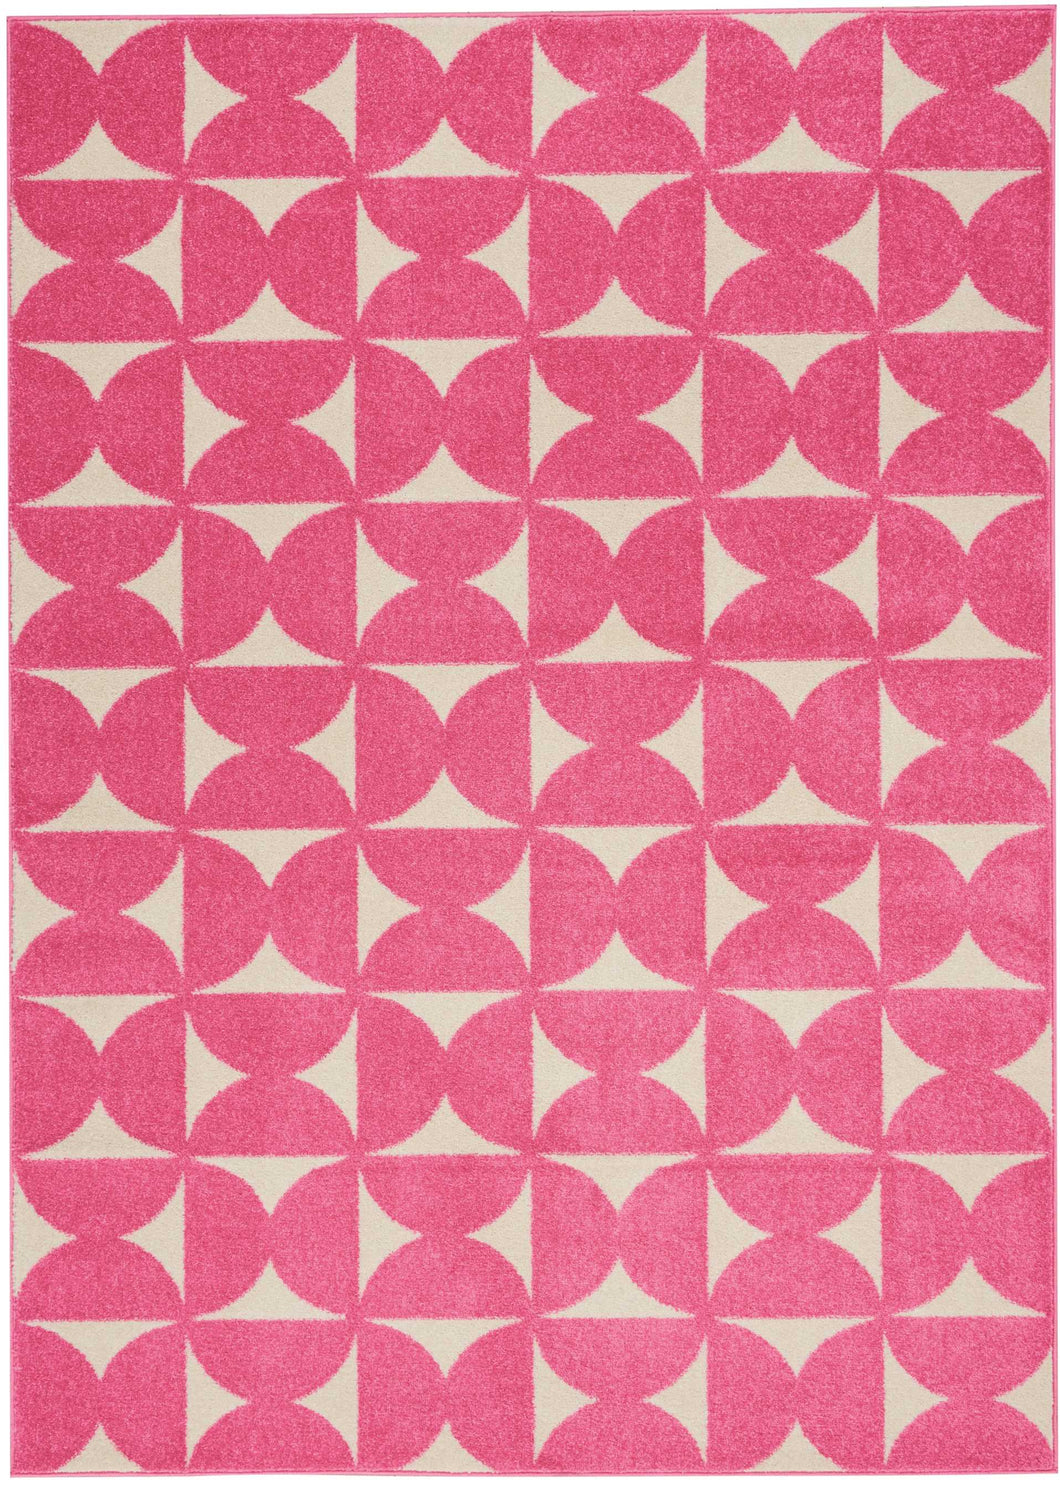 Nourison Harper DS301 Pink 5'x7' Area Rug DS301 Pink